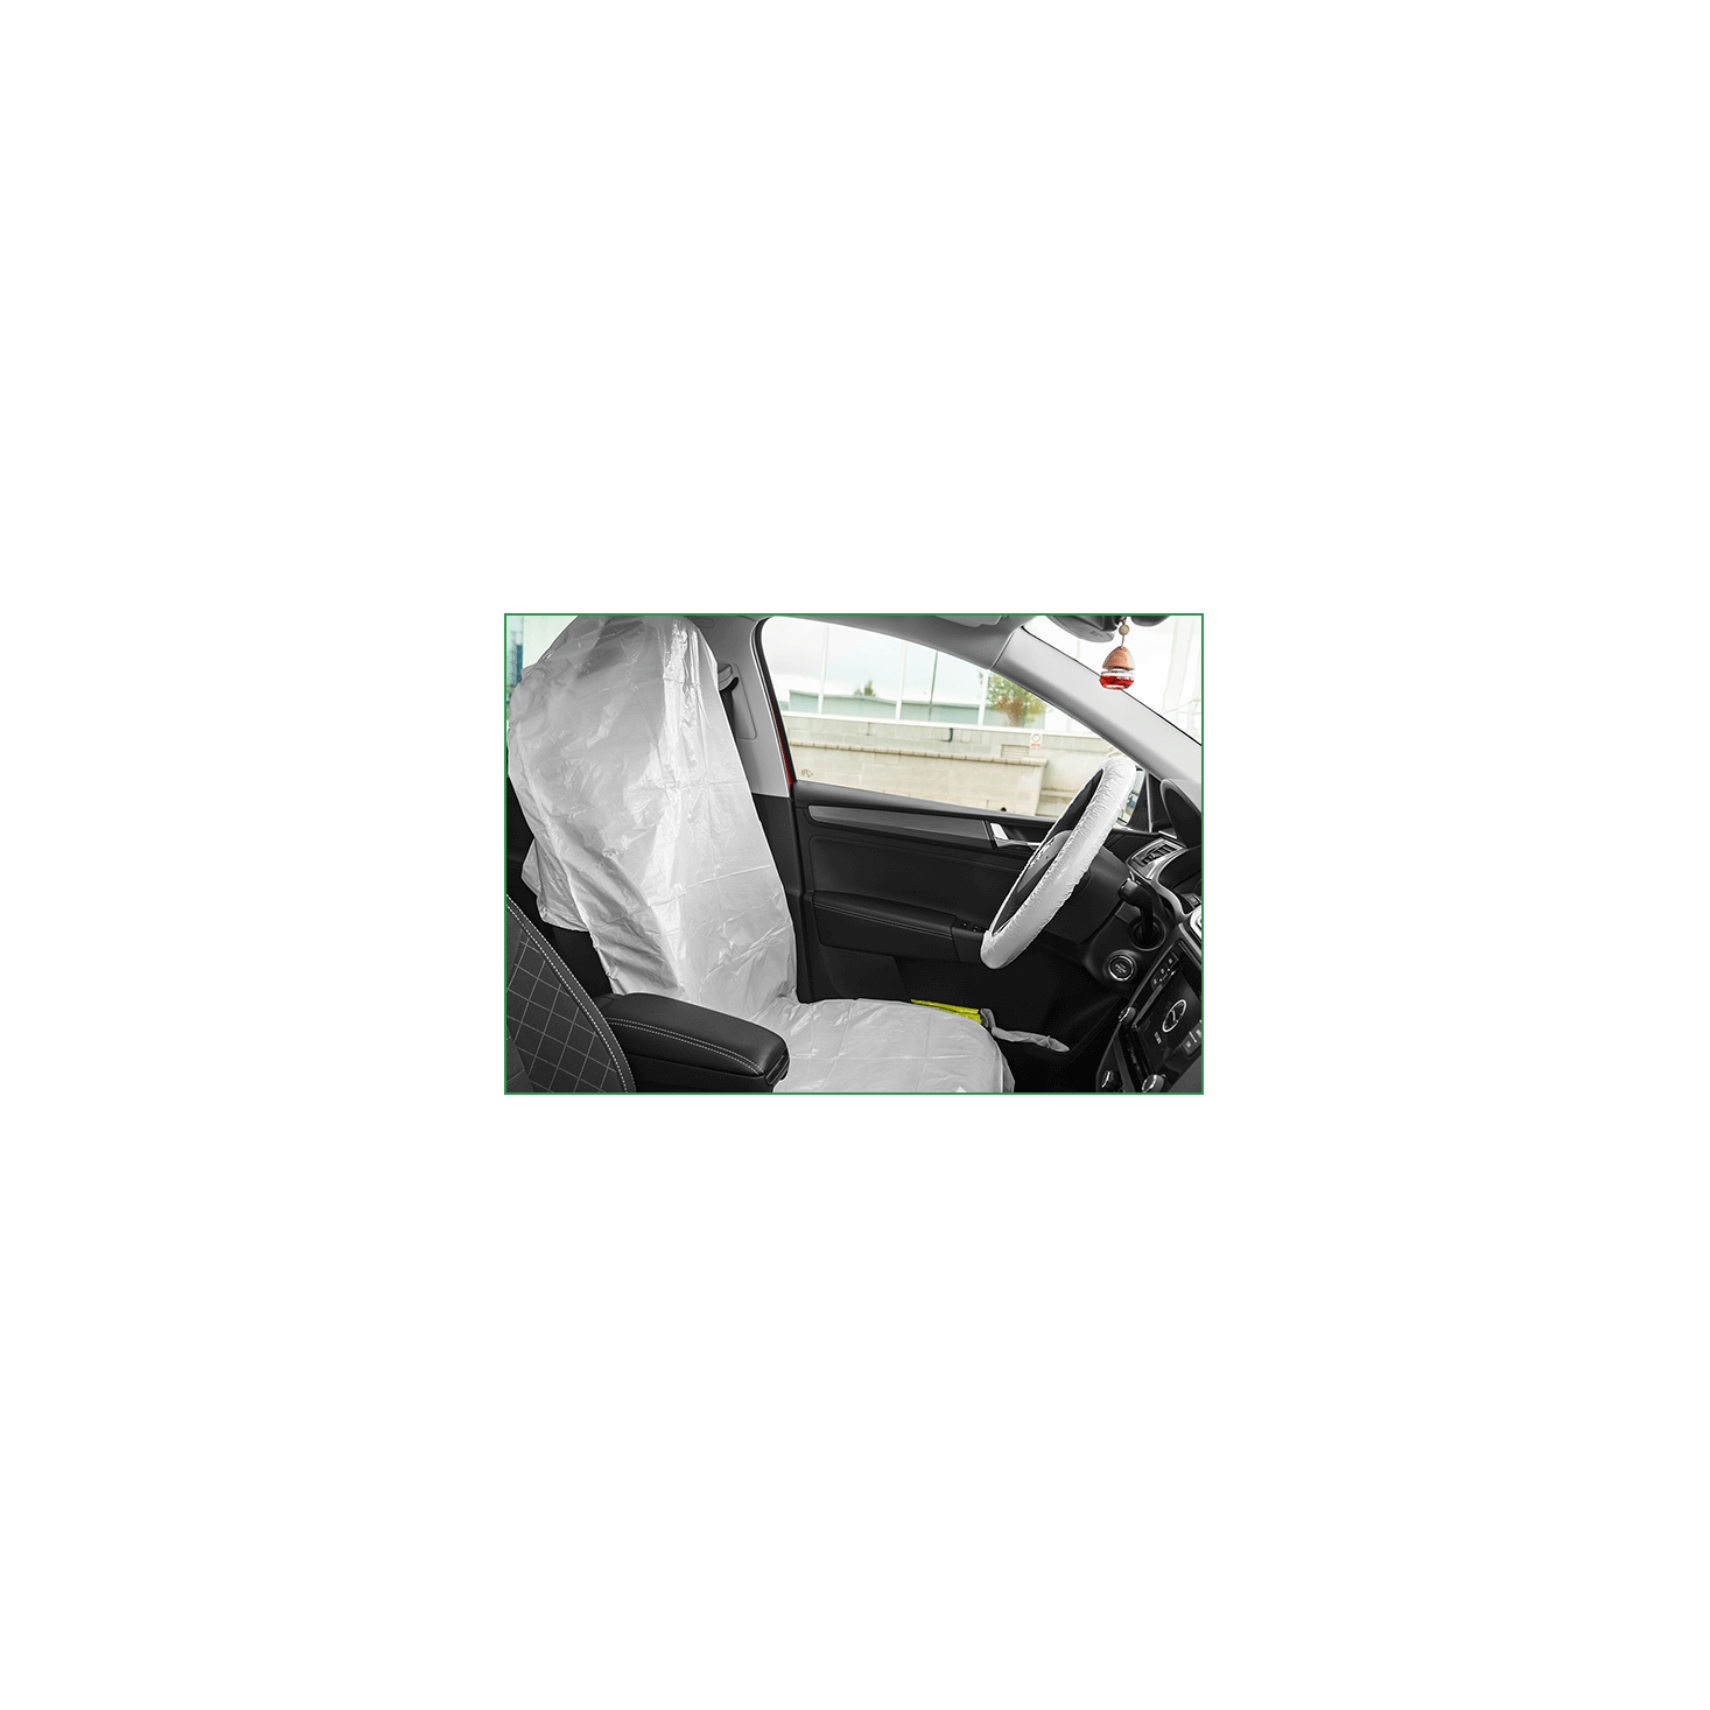 Drivecase kit complet de sécurité routière jeunes conducteurs - accessoire  auto - InnovMania